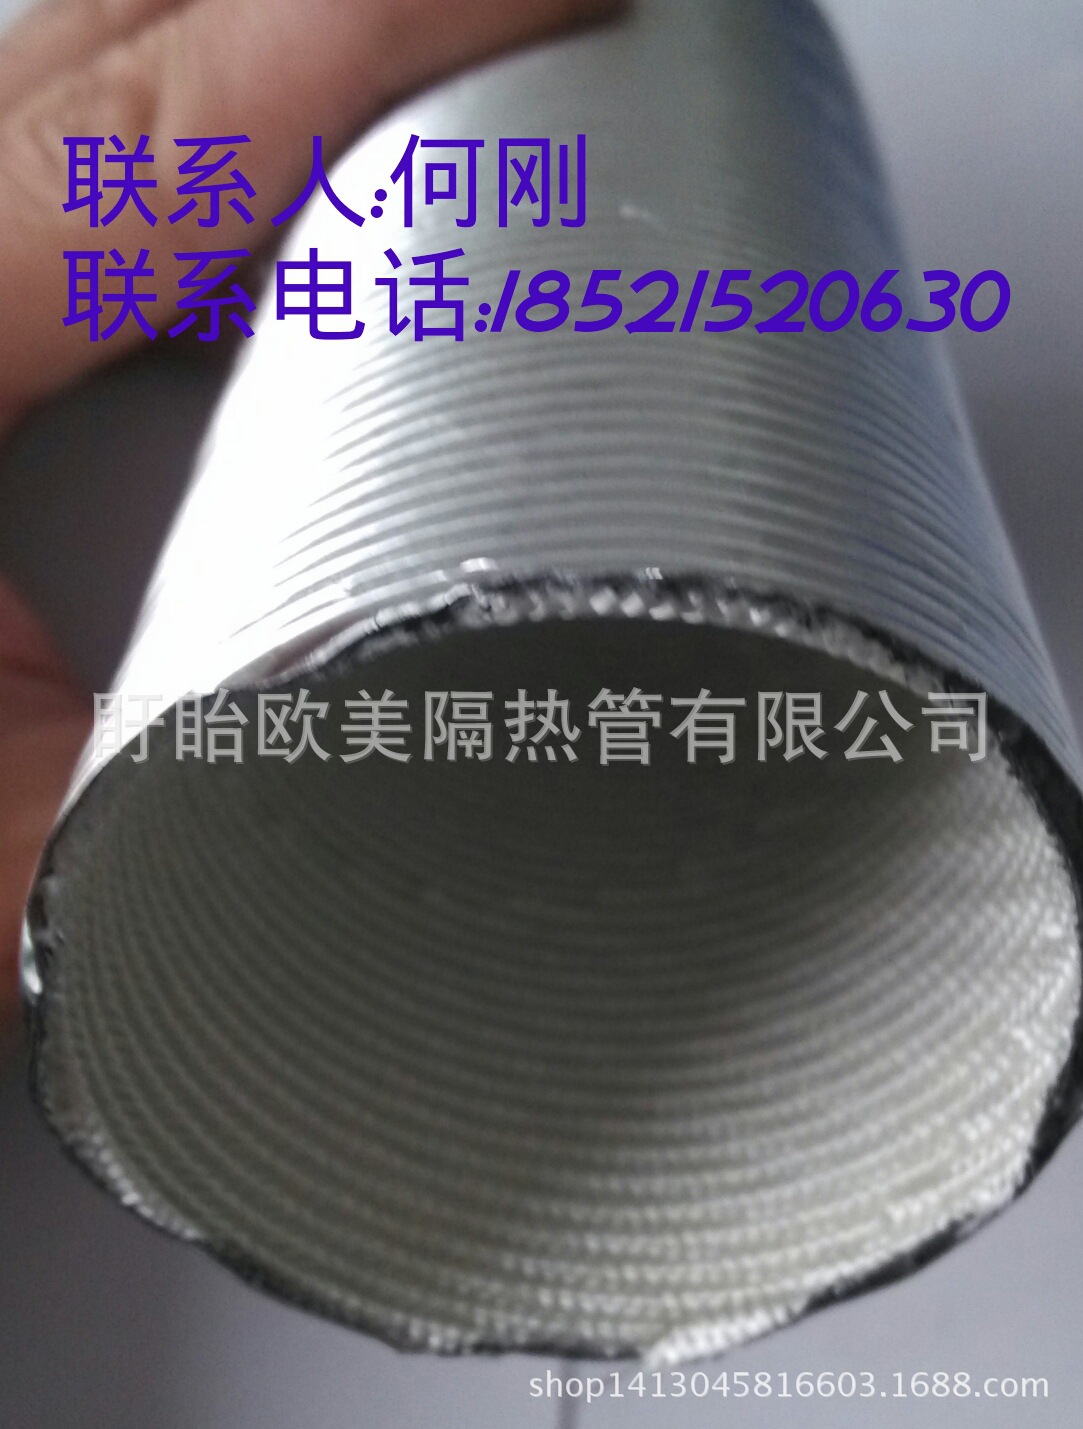 厂家自主生产汽车空调铝箔波纹管